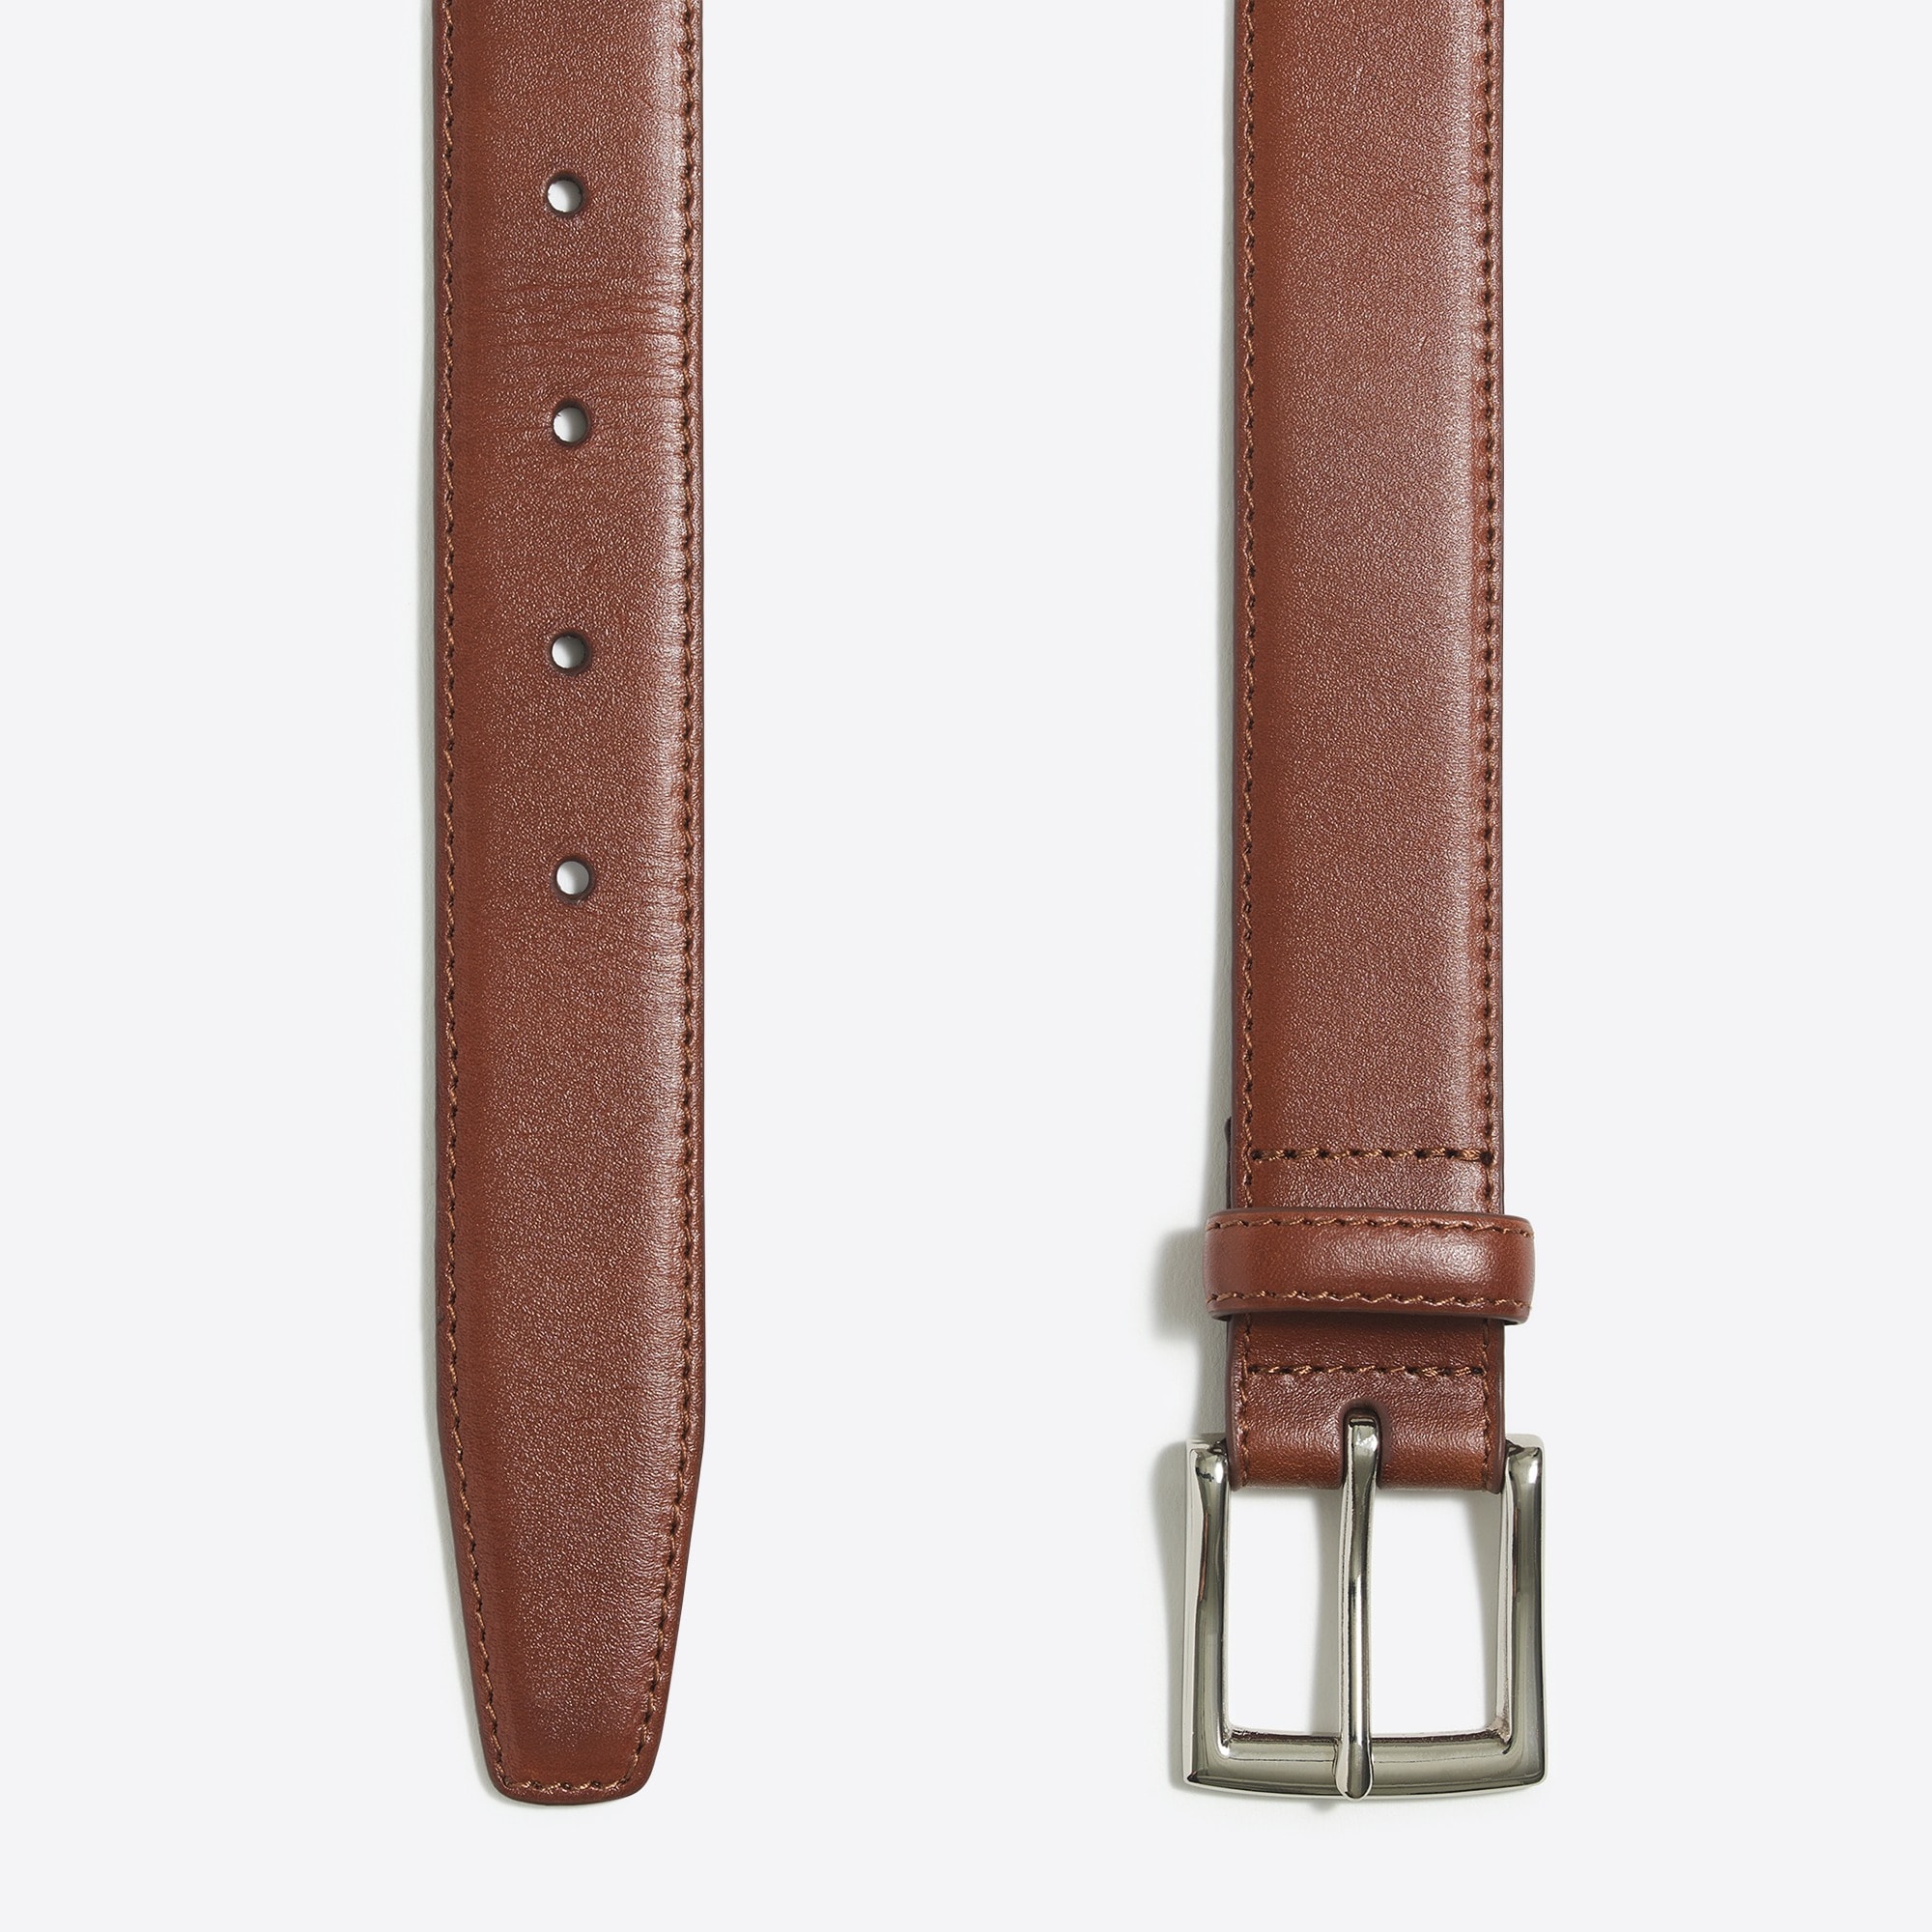 Classic dress belt